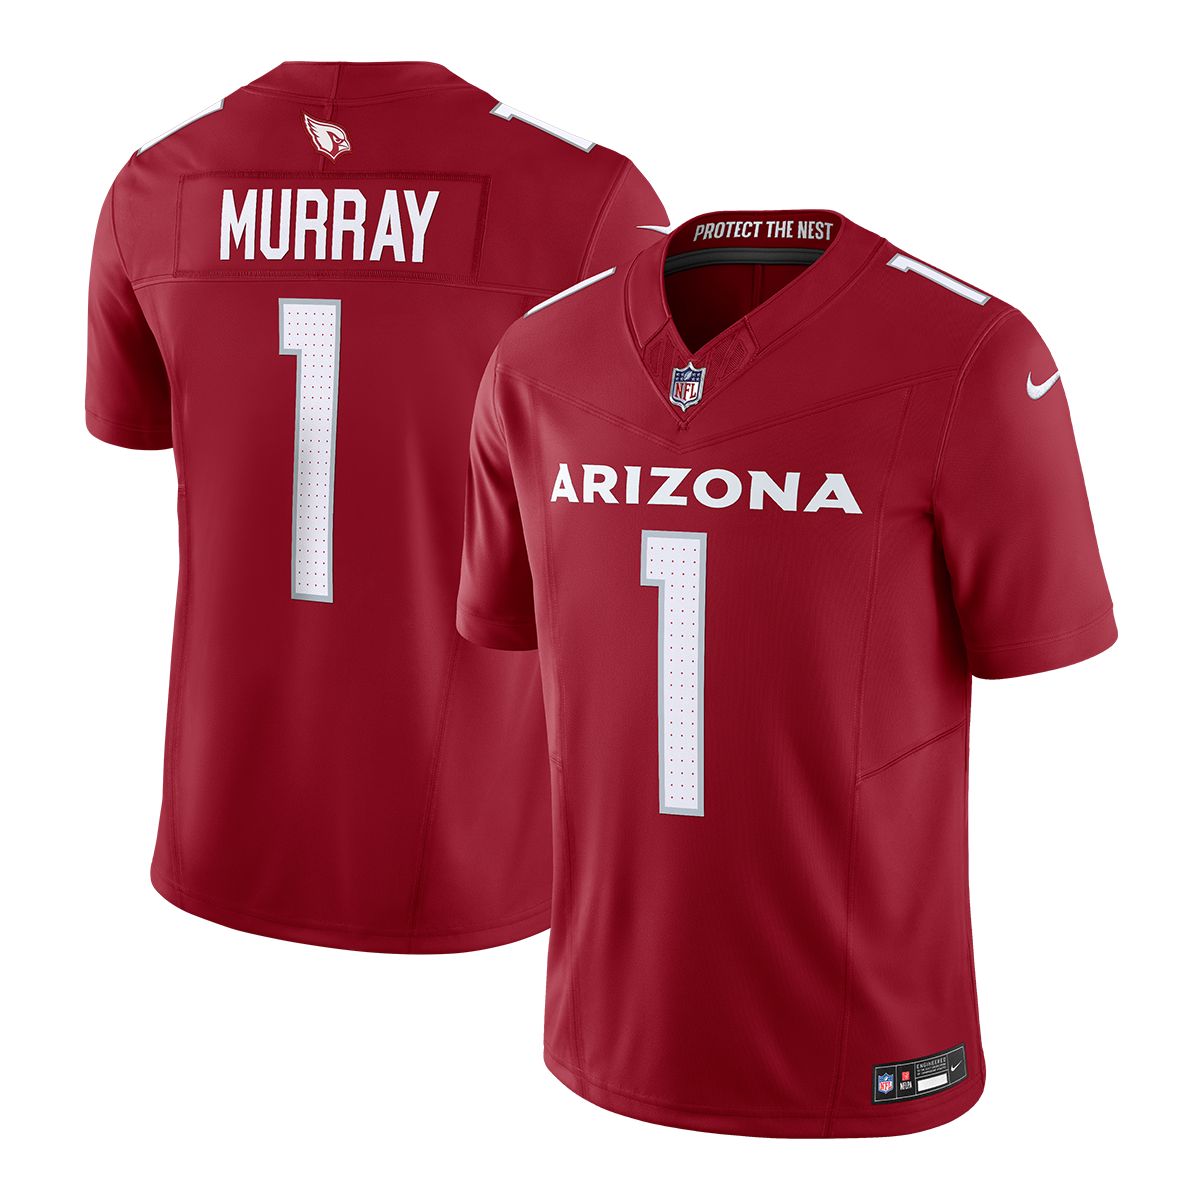 Image of Arizona Cardinals Nike Kyler Murray Limited Jersey